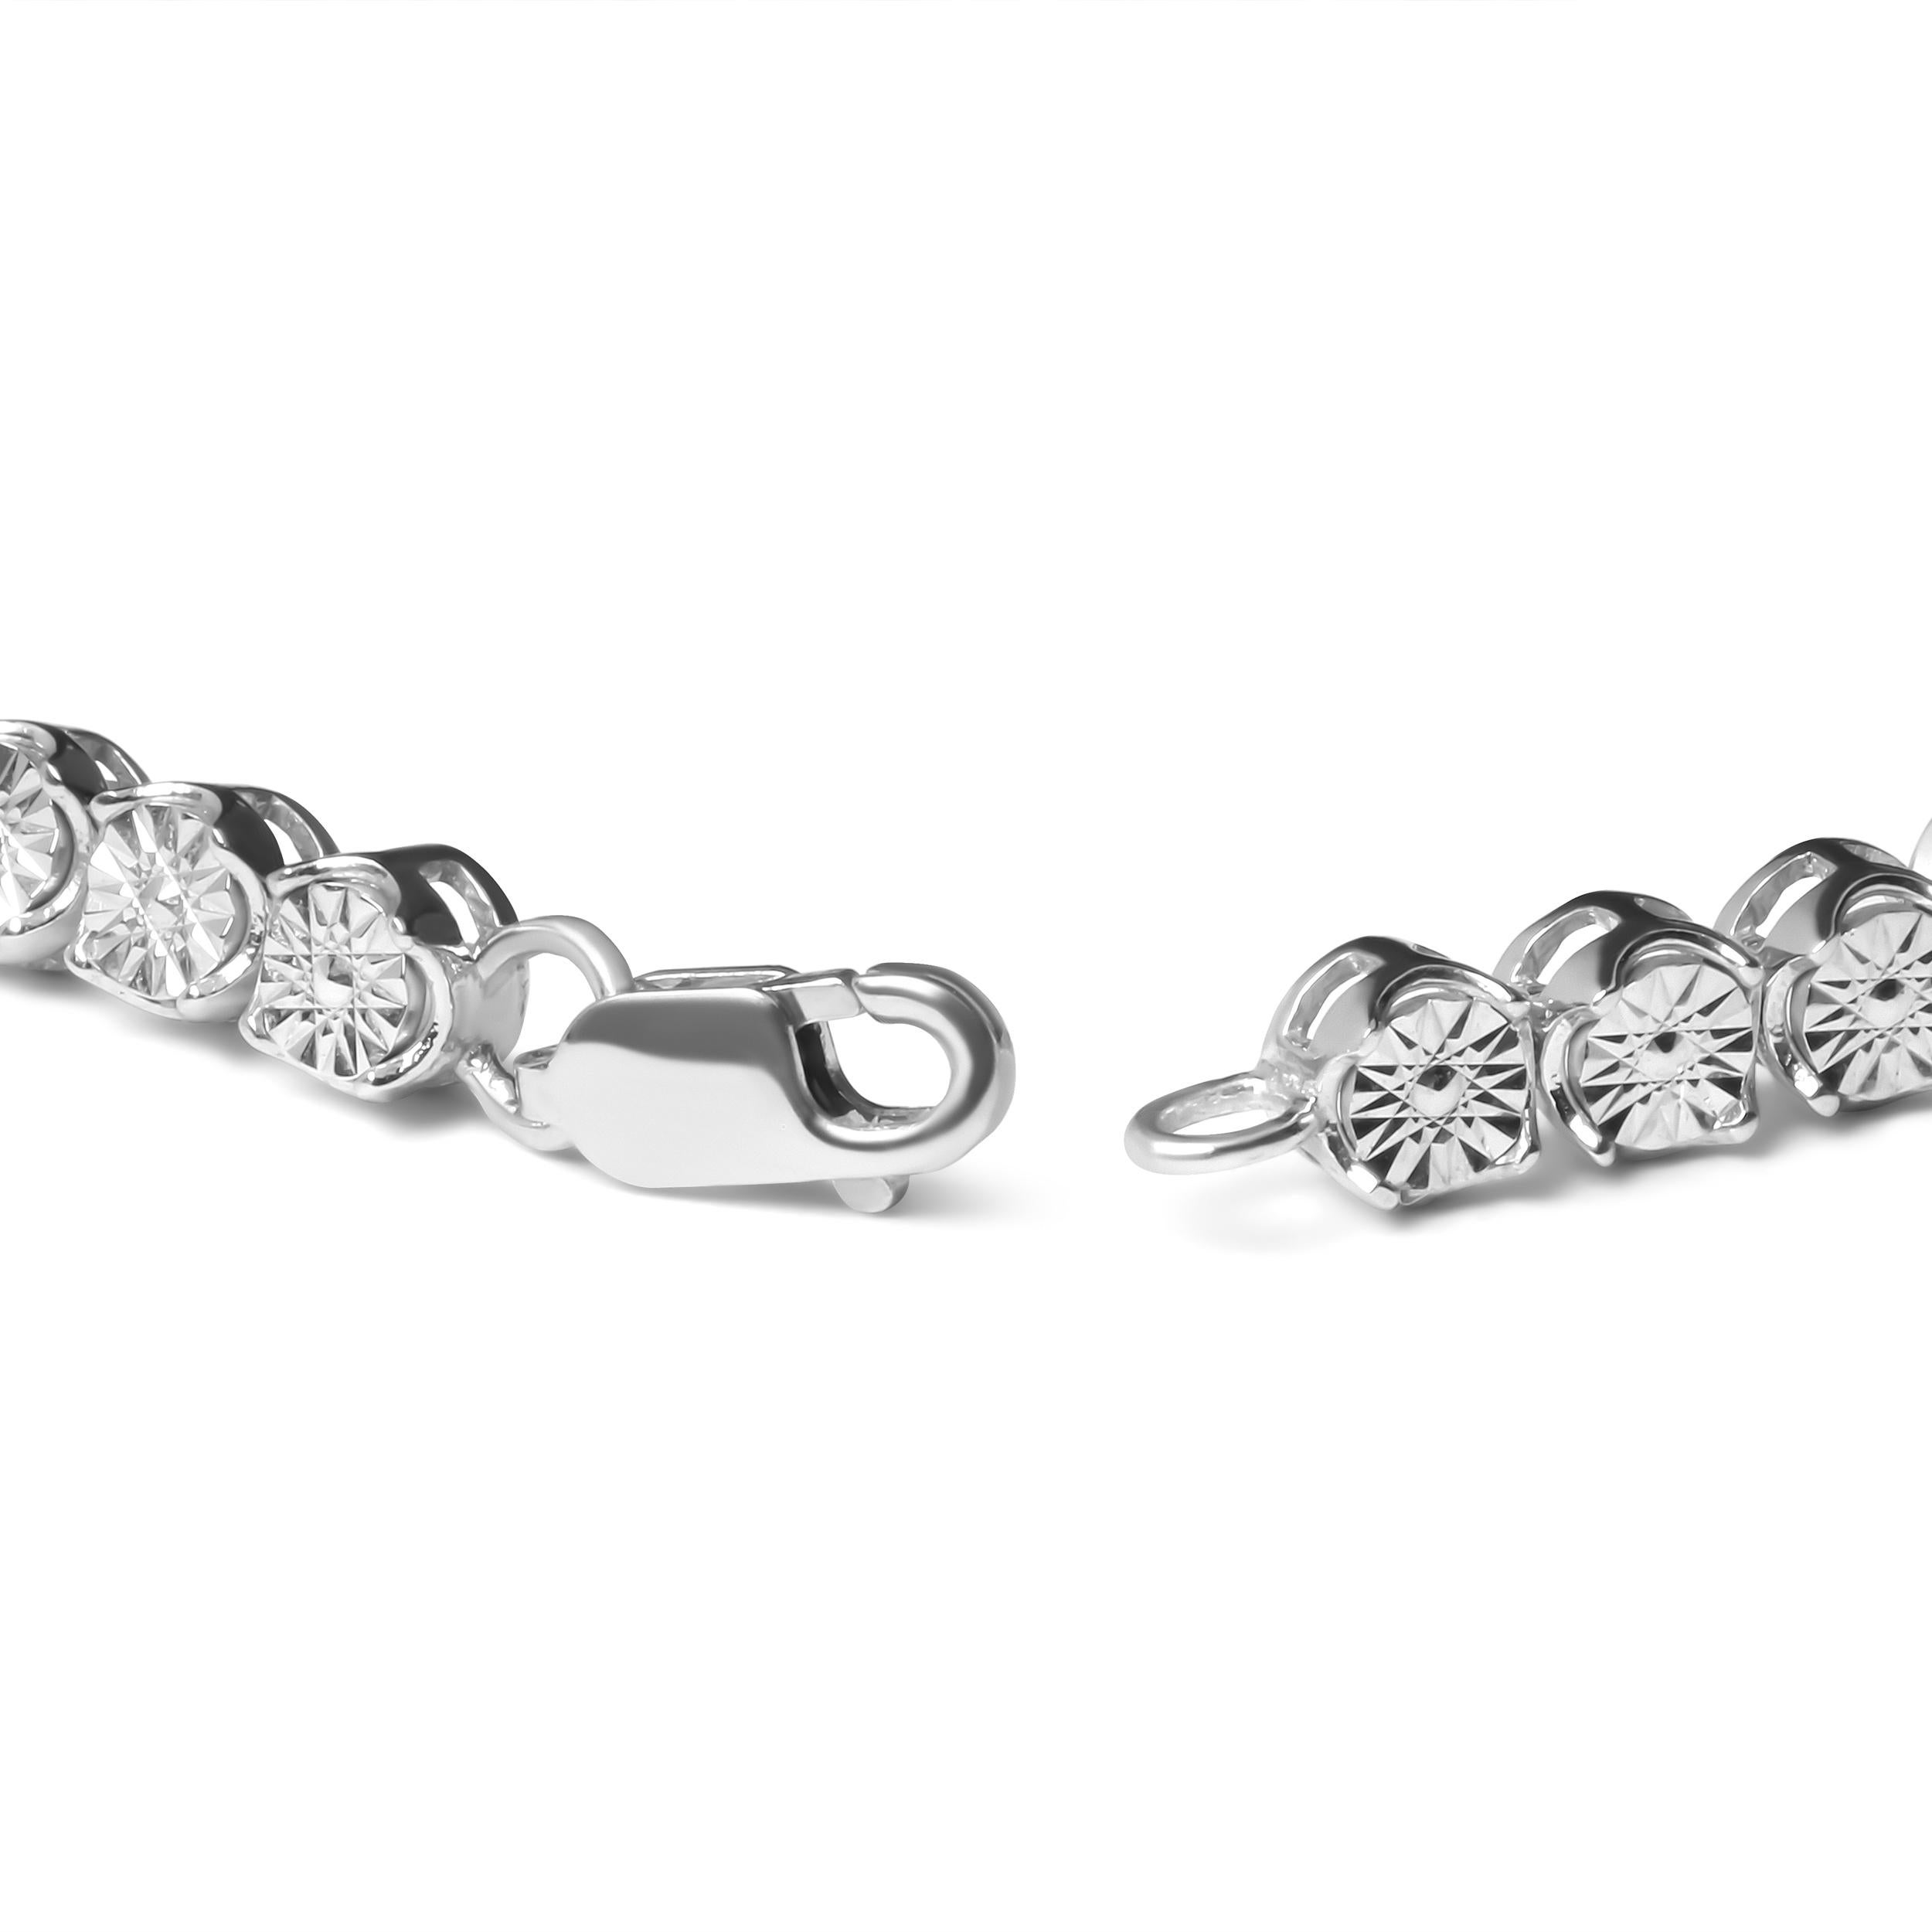 Différent du bracelet en diamants classique, ce modèle accrocheur est mis en valeur par les 51 diamants ronds naturels en serti-miracle qui forment de magnifiques grappes florales. Montée sur une chaîne en argent 925, cette pièce remarquable rayonne